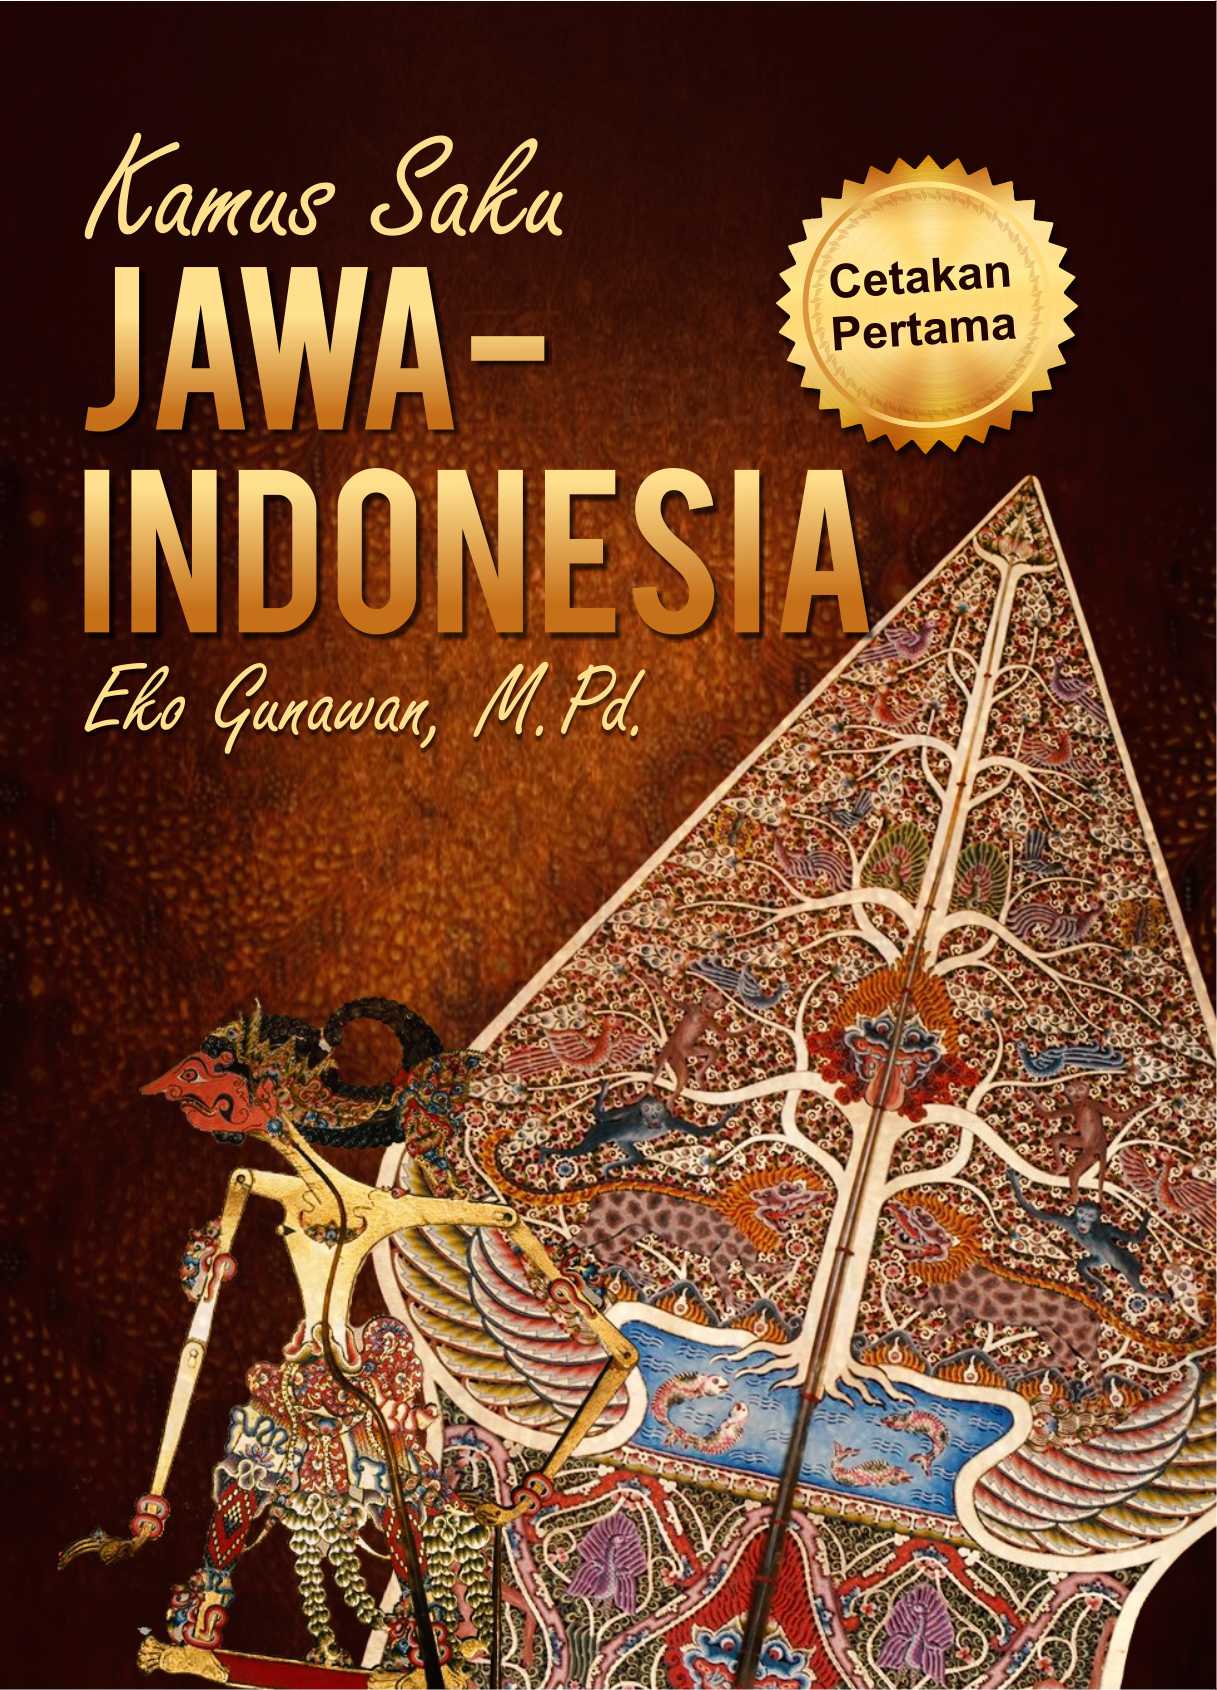  Kamus  Saku Jawa  Indonesia Penerbit Deepublish Yogyakarta